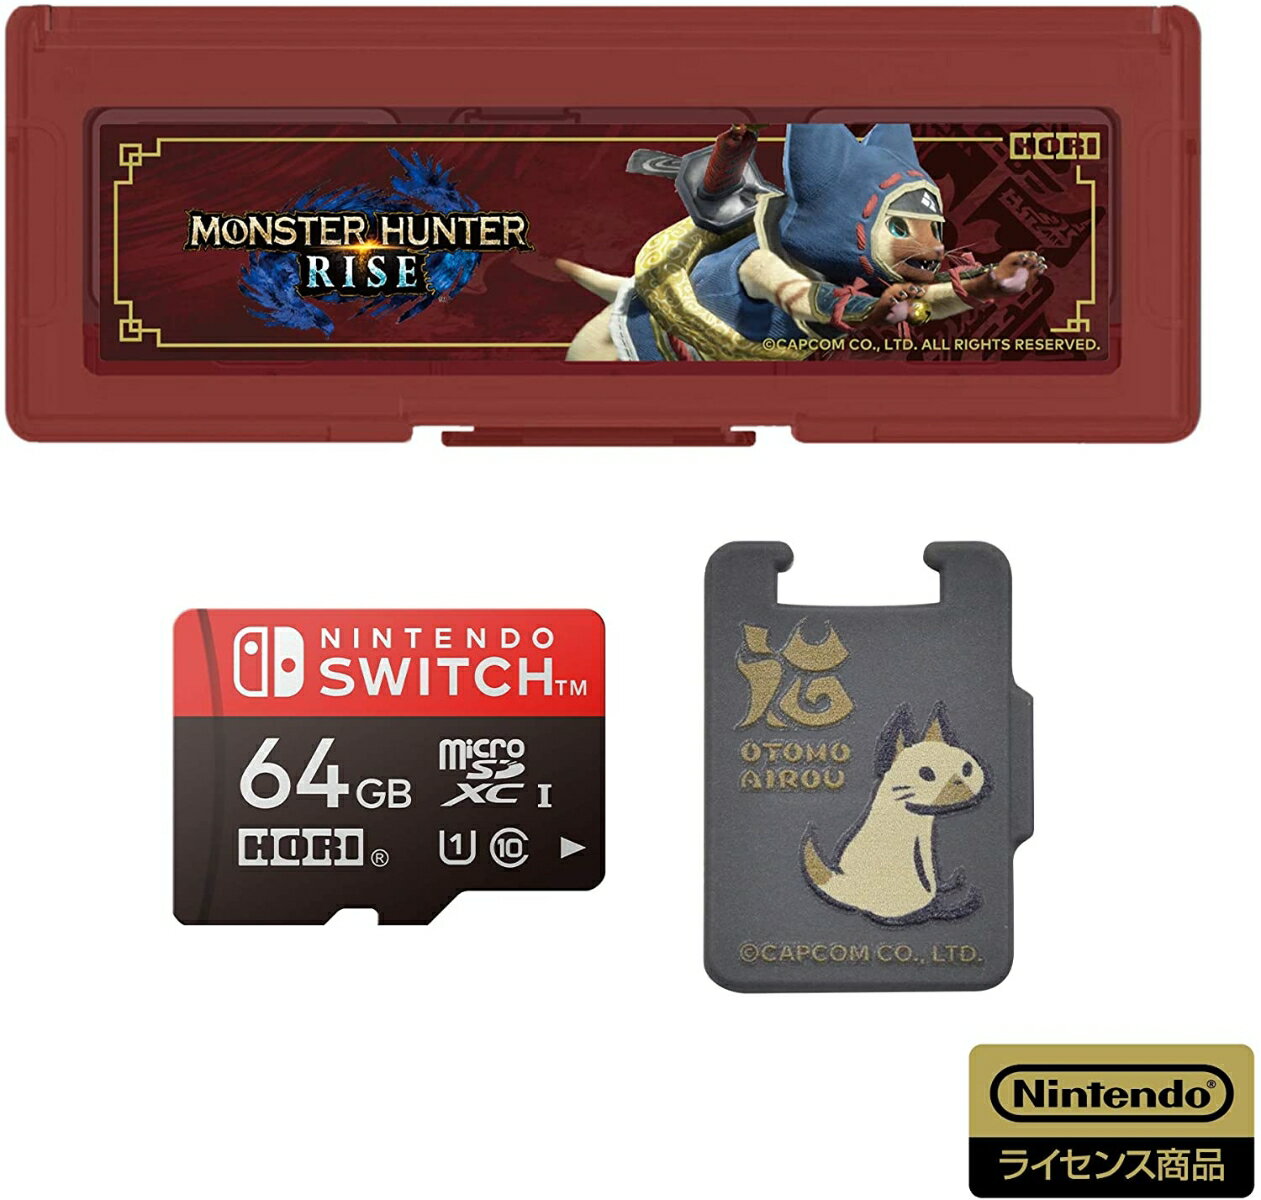 モンスターハンターライズ マイクロSDカード + カードケース6 for Nintendo Switch 64GB